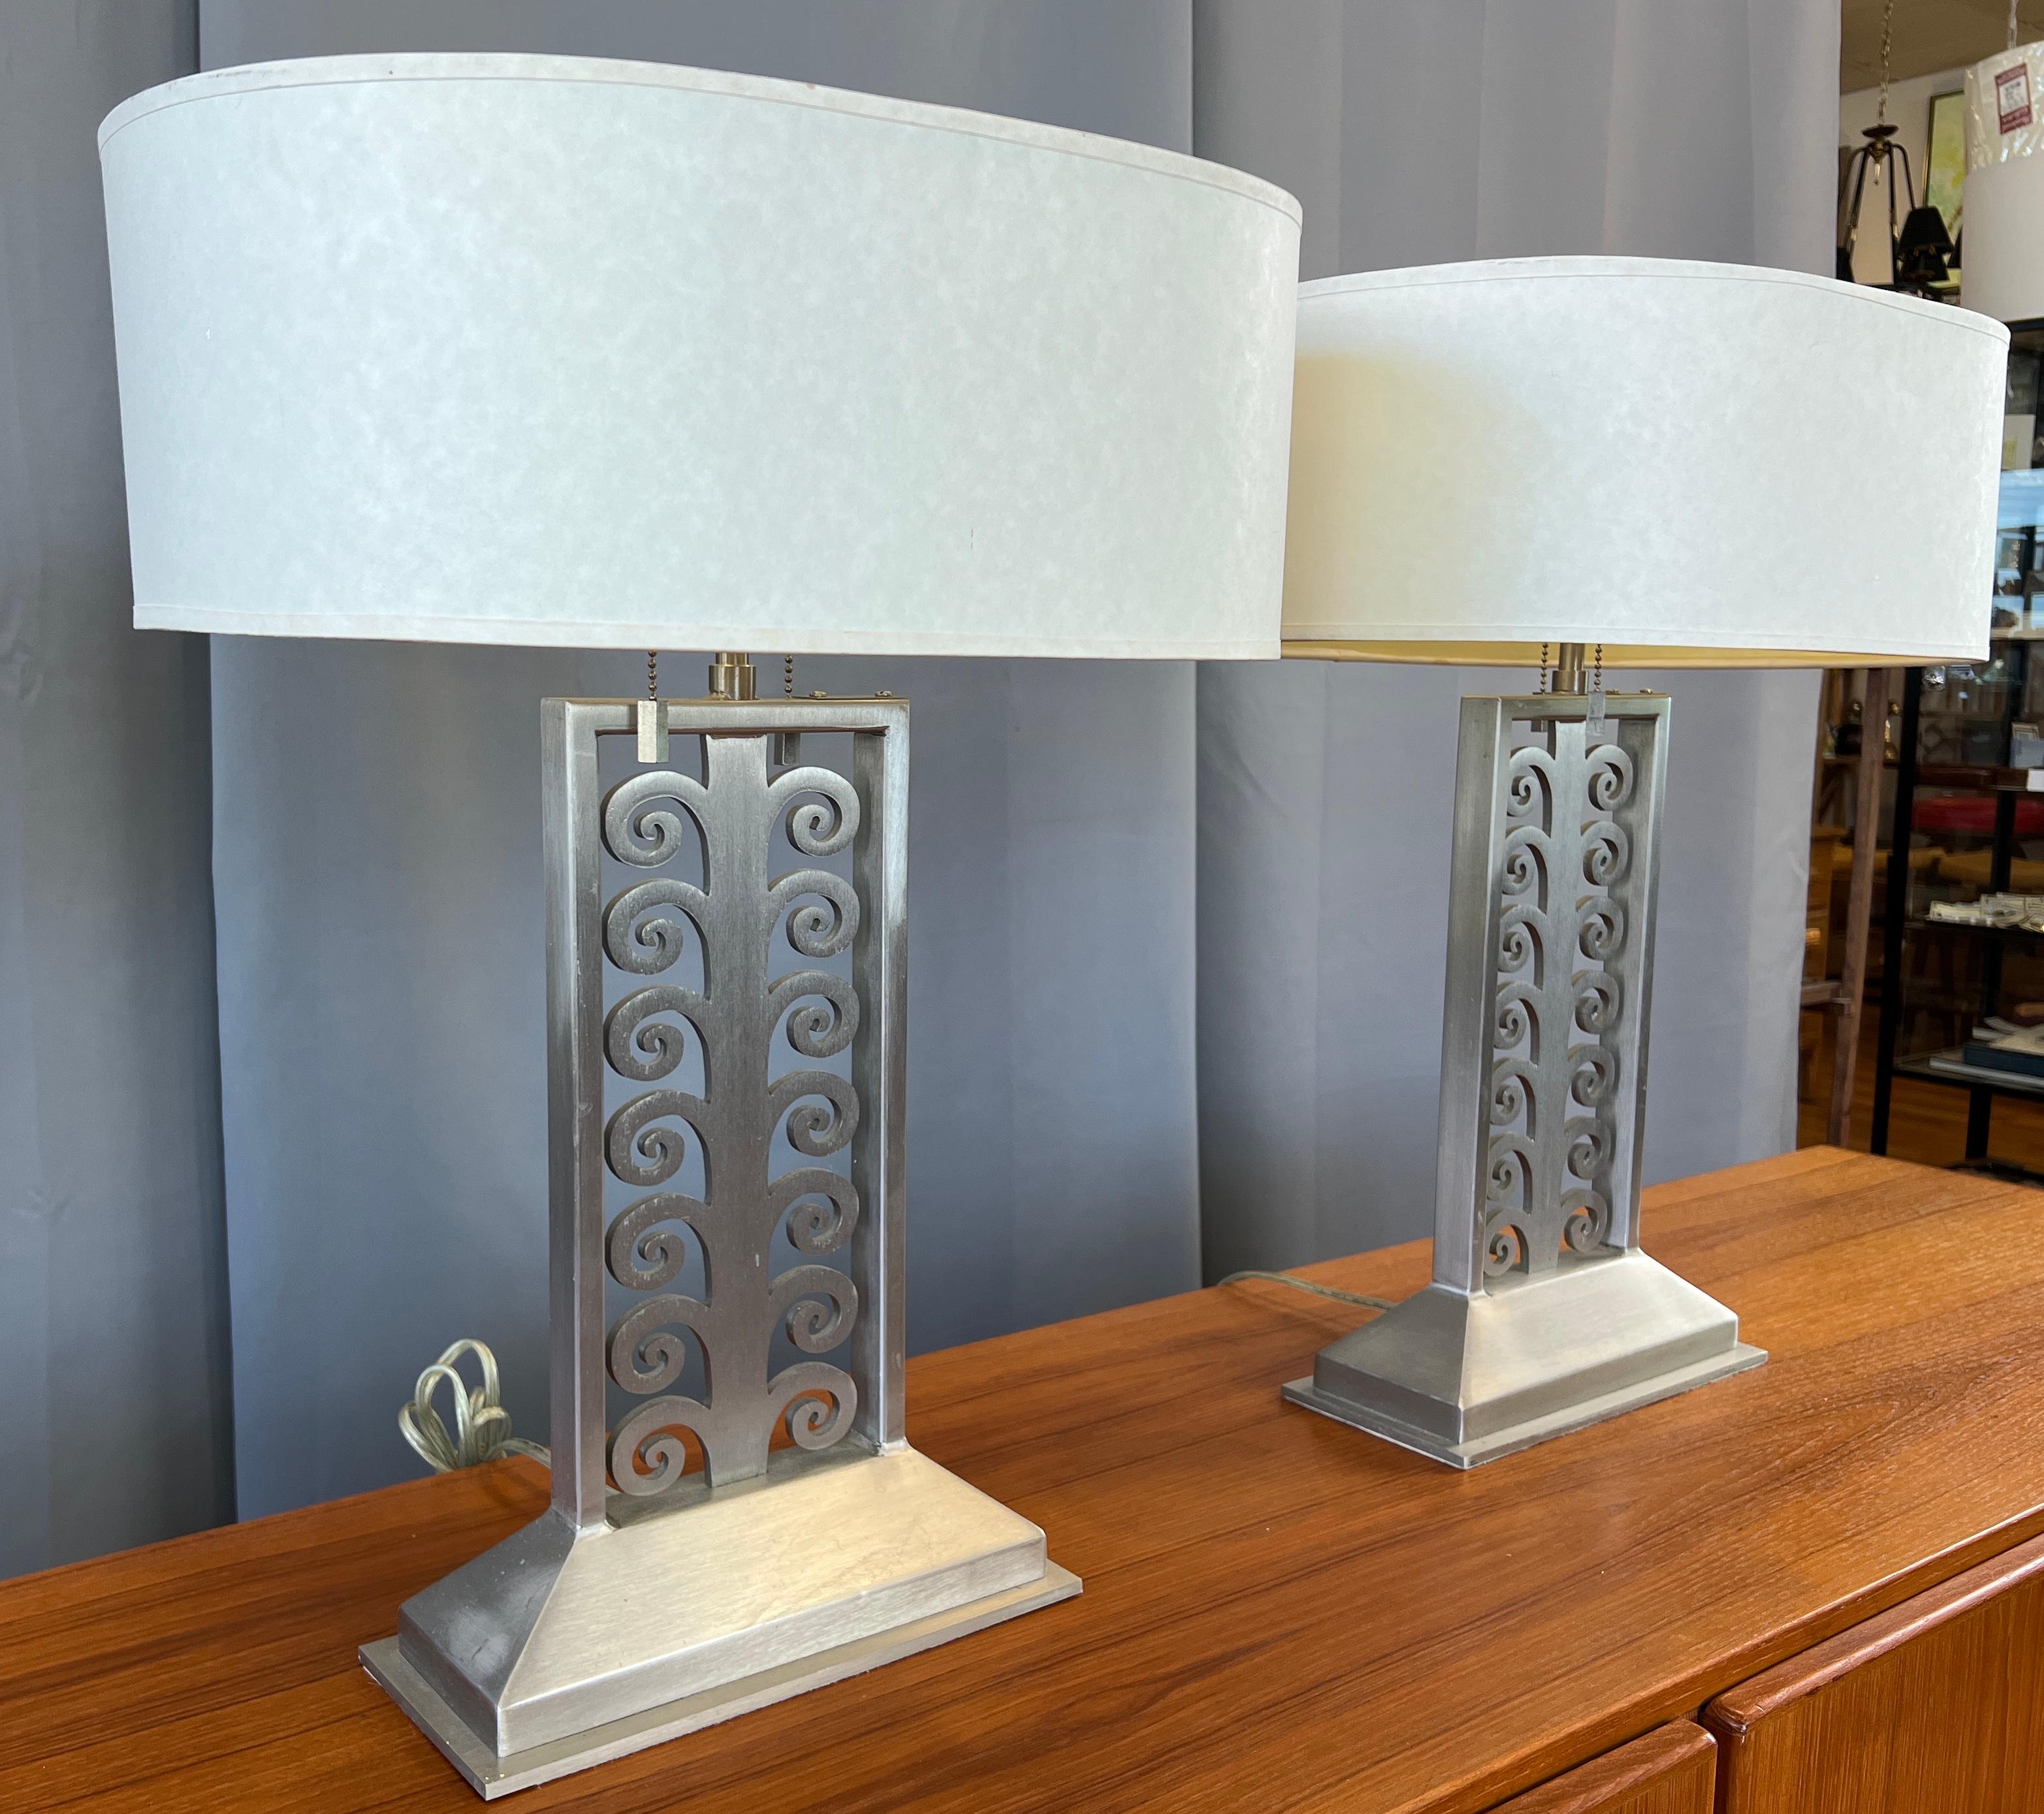 Nous proposons ici une paire de lampes de table conçues et fabriquées par Sirmos. Les deux ont des labels sur leur face inférieure. 
En acier inoxydable brossé, avec au centre un dessin encadré de volutes découpées au laser, sur des bases